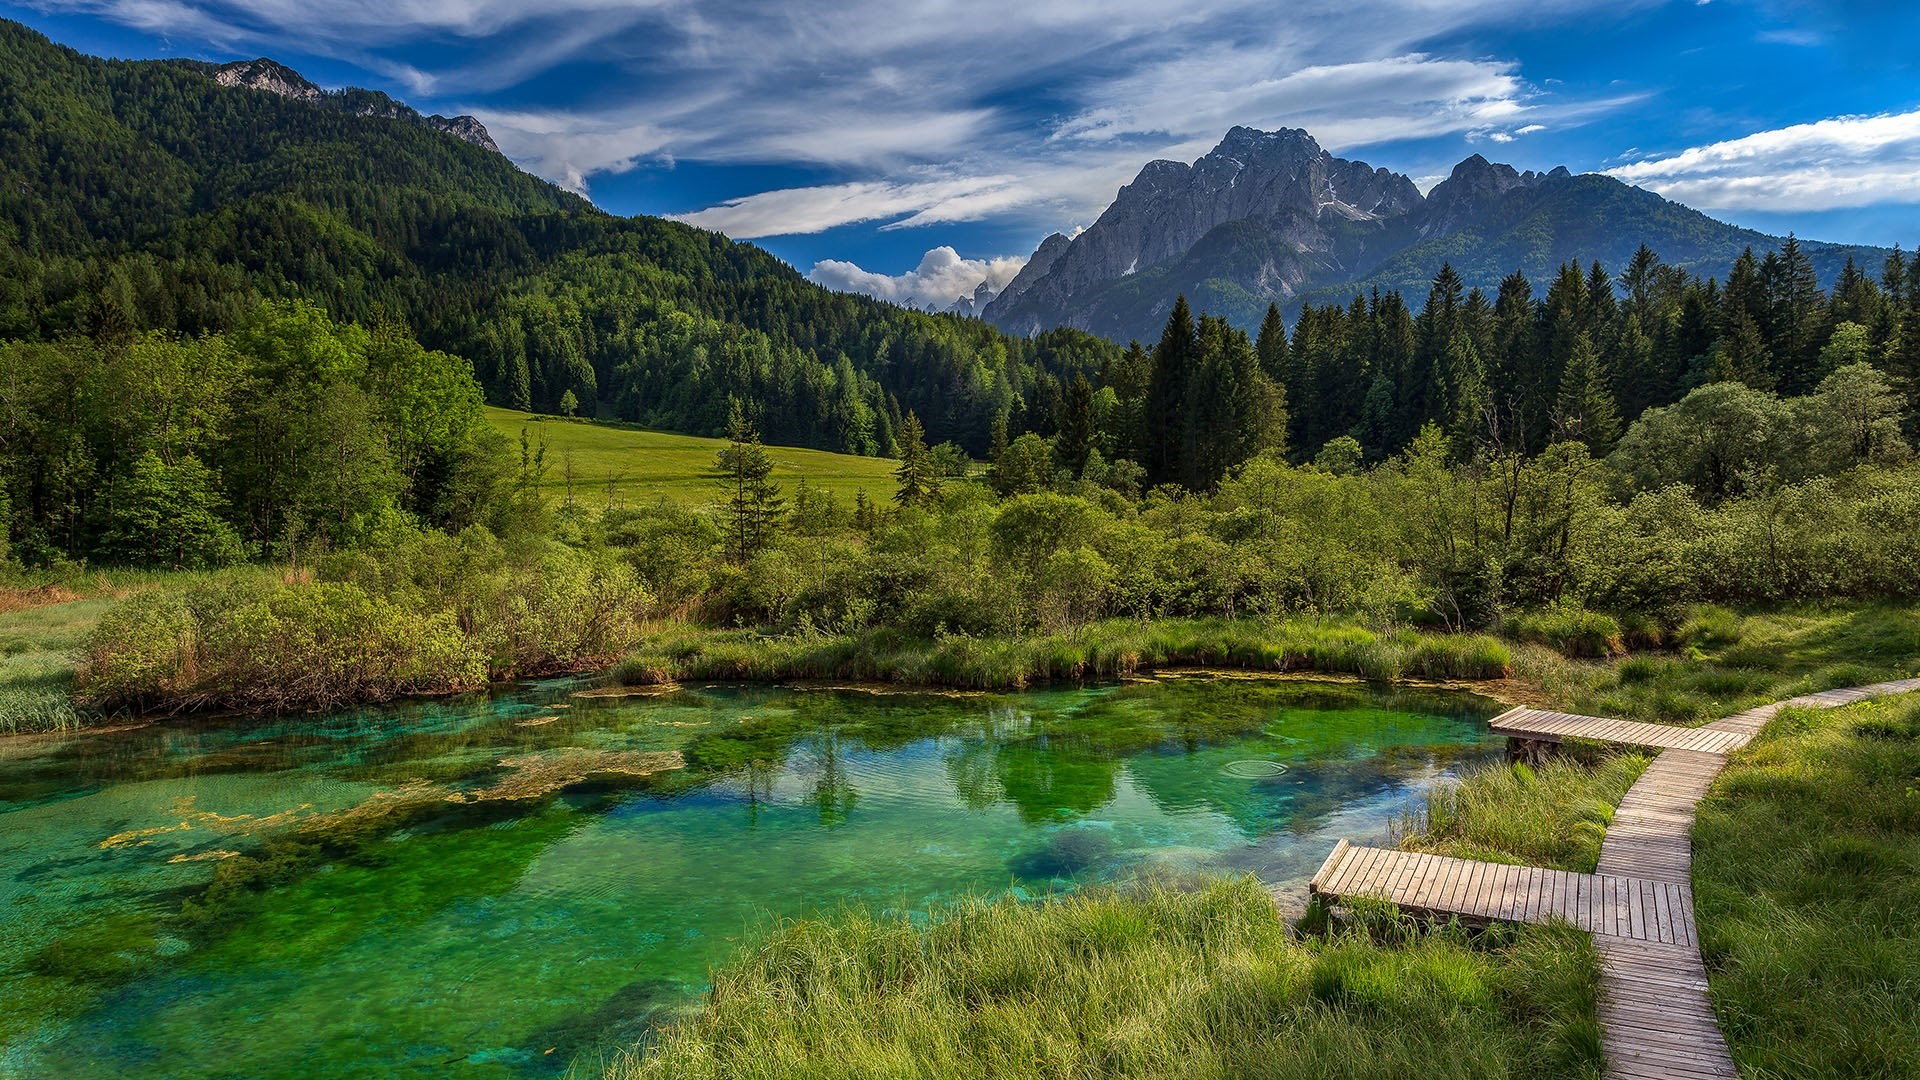 Popular Triglav National Park Slovenia Image for Phone